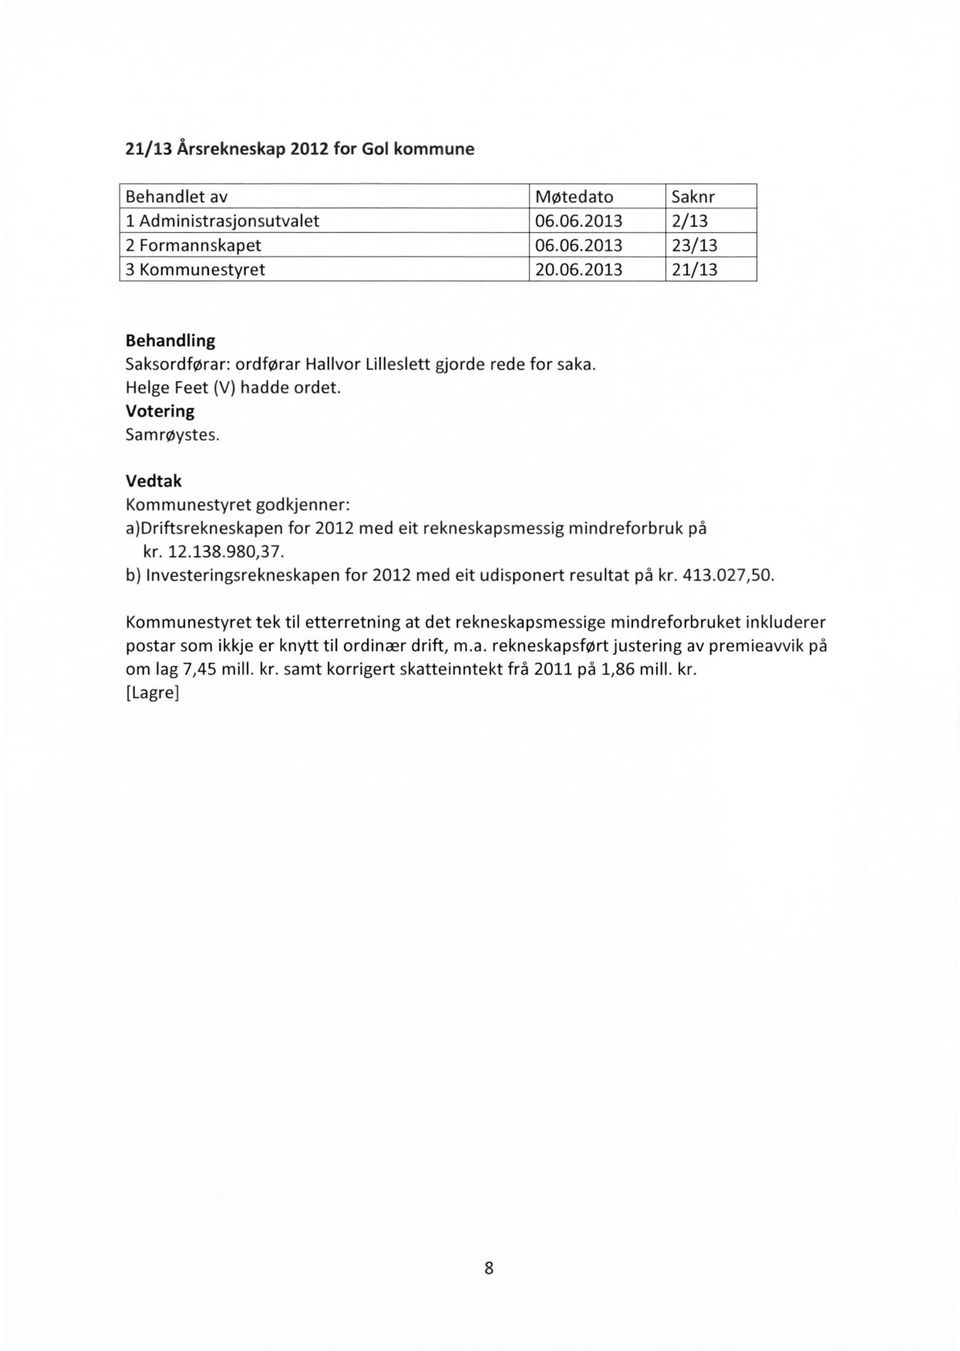 b) Investeringsrekneskapen for 2012 med eit udisponert resultat på kr. 413.027,50.